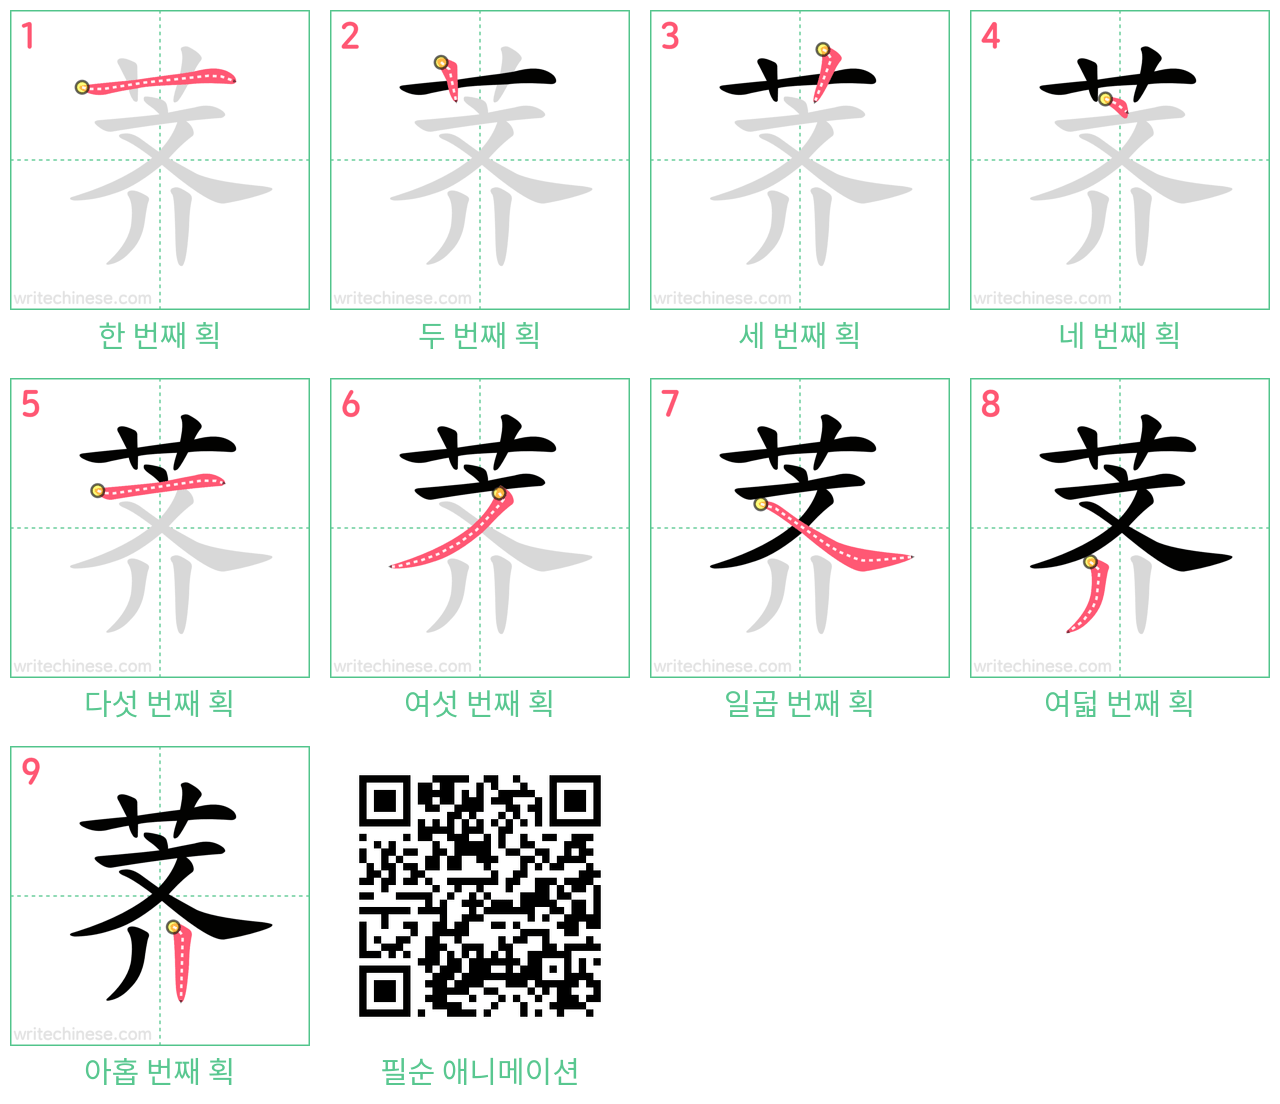 荠 step-by-step stroke order diagrams